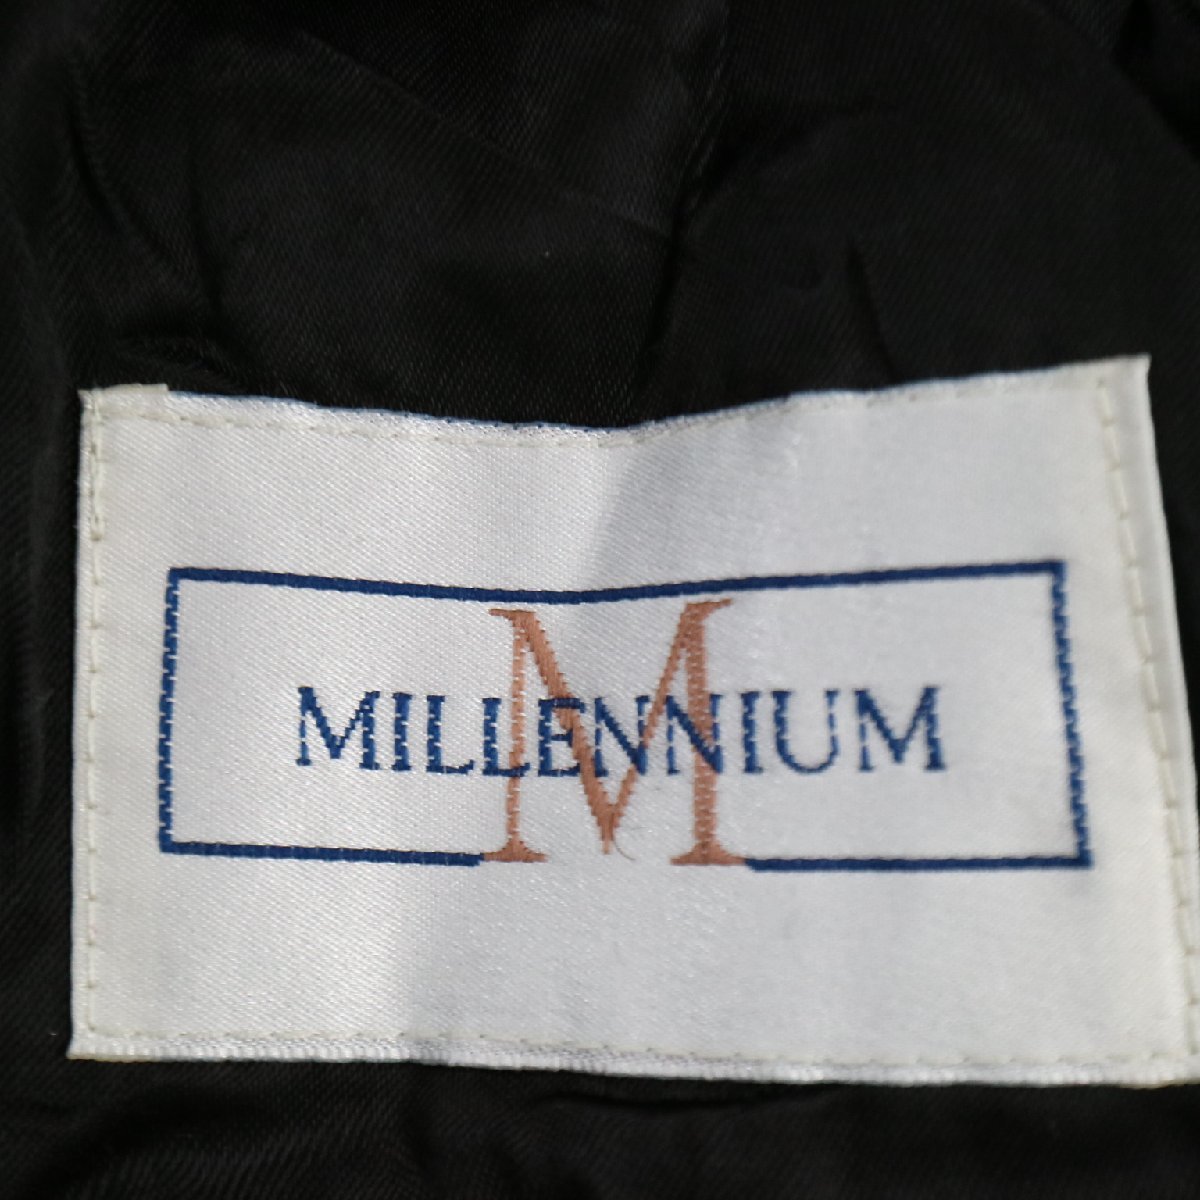 MILLENNIUM  шерсть   половина  пальто  ...  защита от холода   ...  черный  (  мужской  XL размер   соответствует   )  подержанный товар   бу одежда  M3700